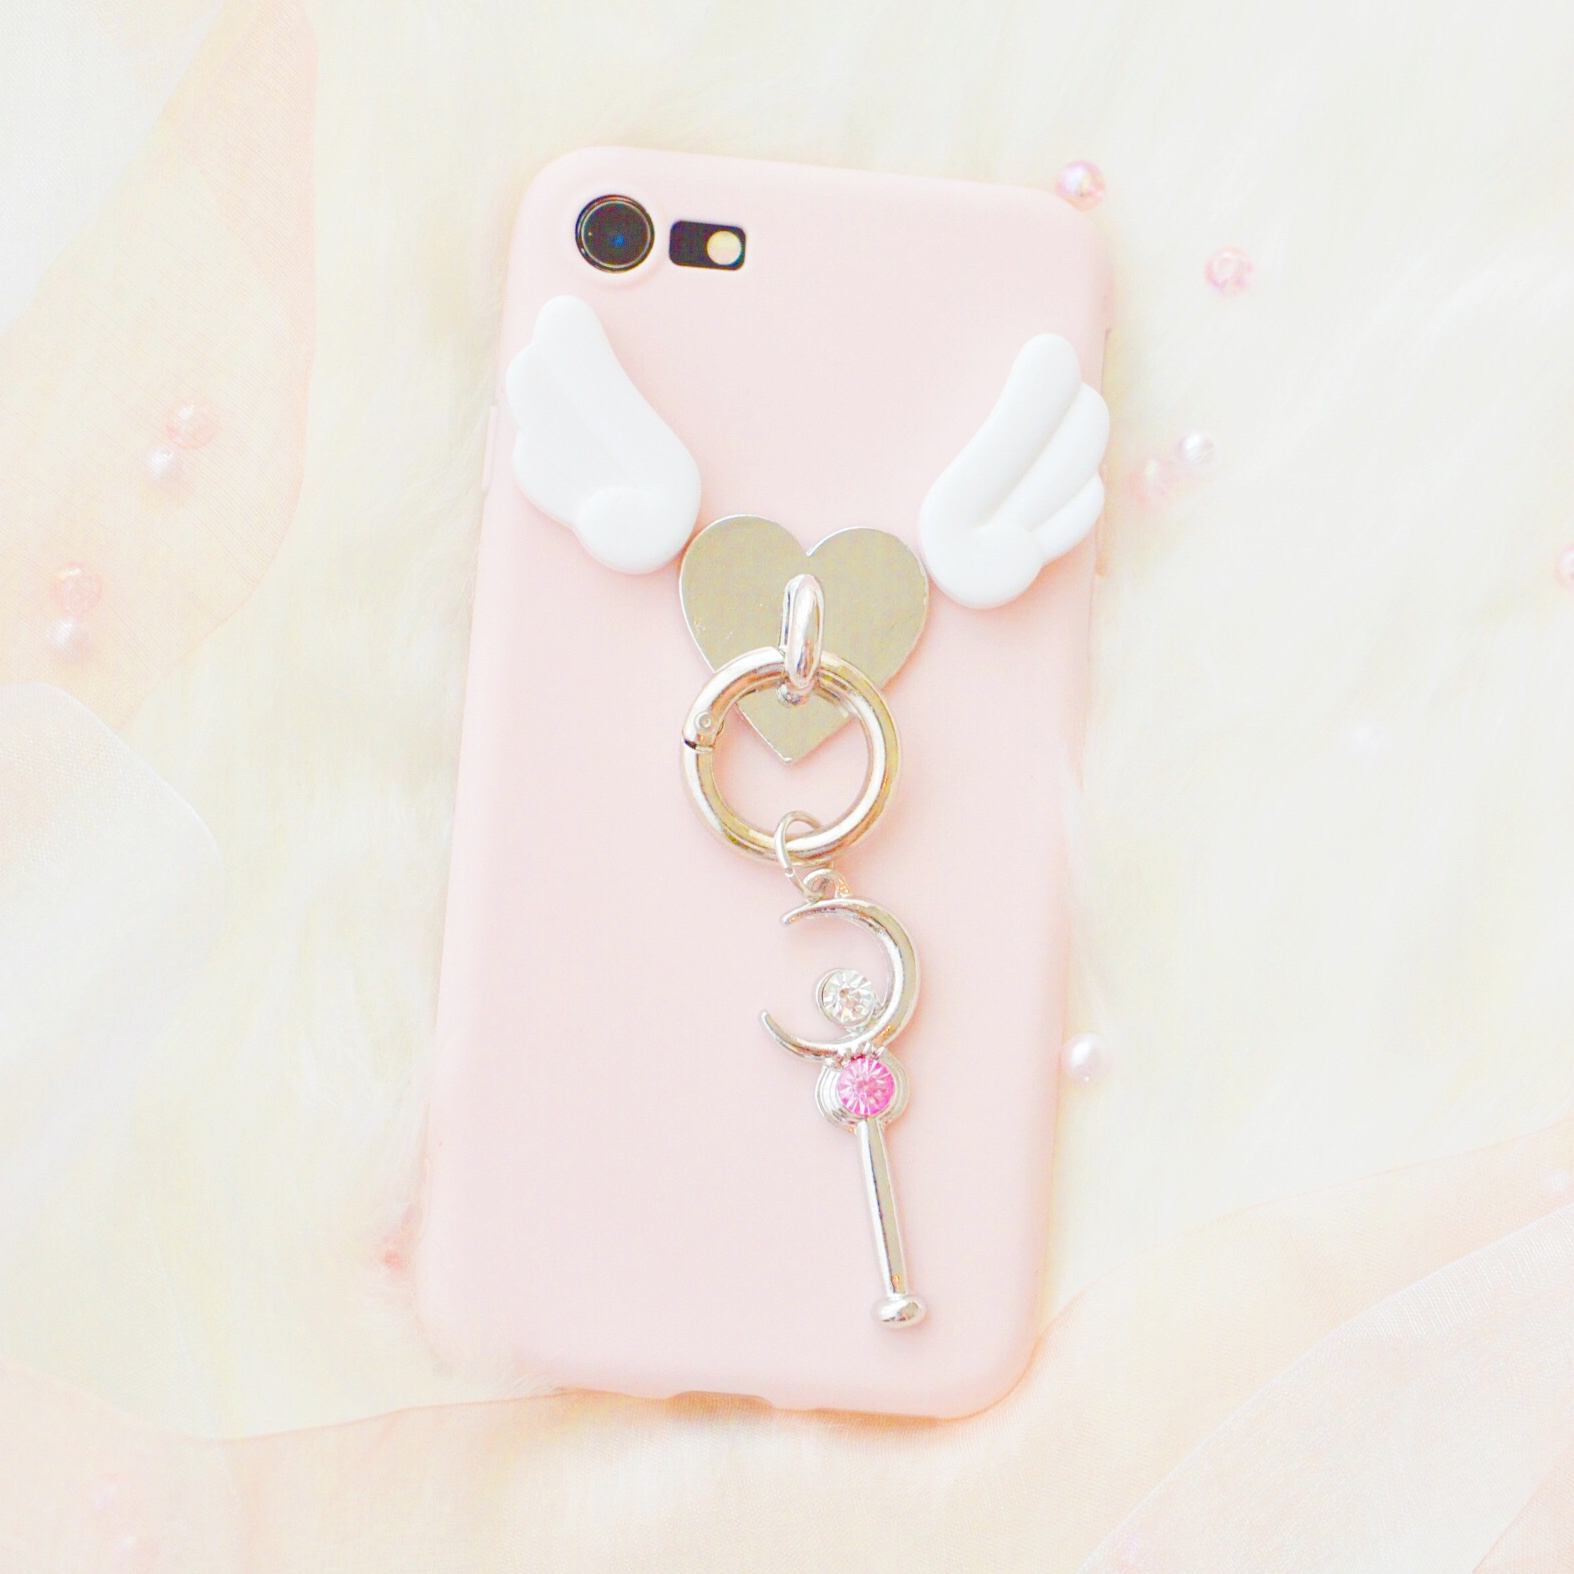 即納 Iphoneケース 魔法のステッキ 天使のはね Iphone8 Iphone7 Iphone6 6s ピンク Iphoneケース とレディース服のshop Koala